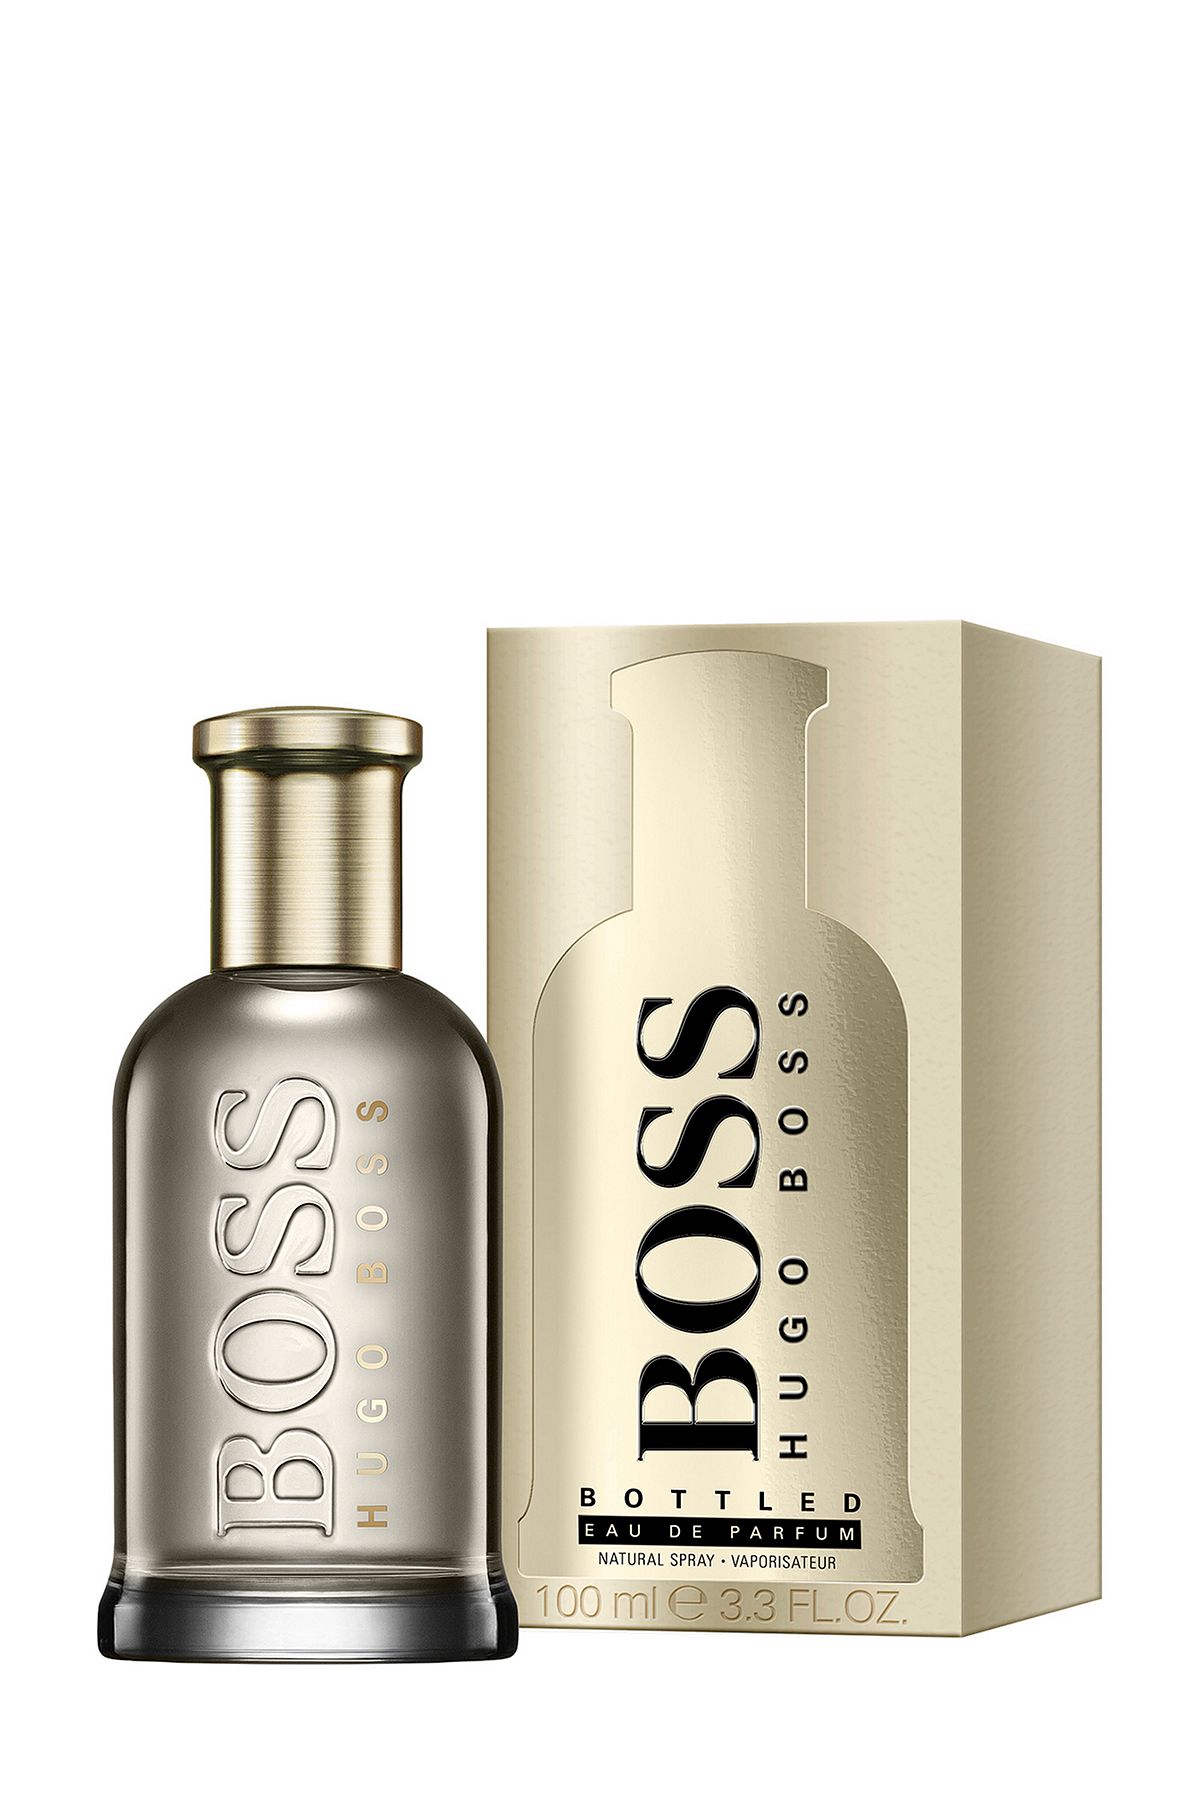 BOSS Bottled eau de parfum 100ml, Assorted-Pre-Pack